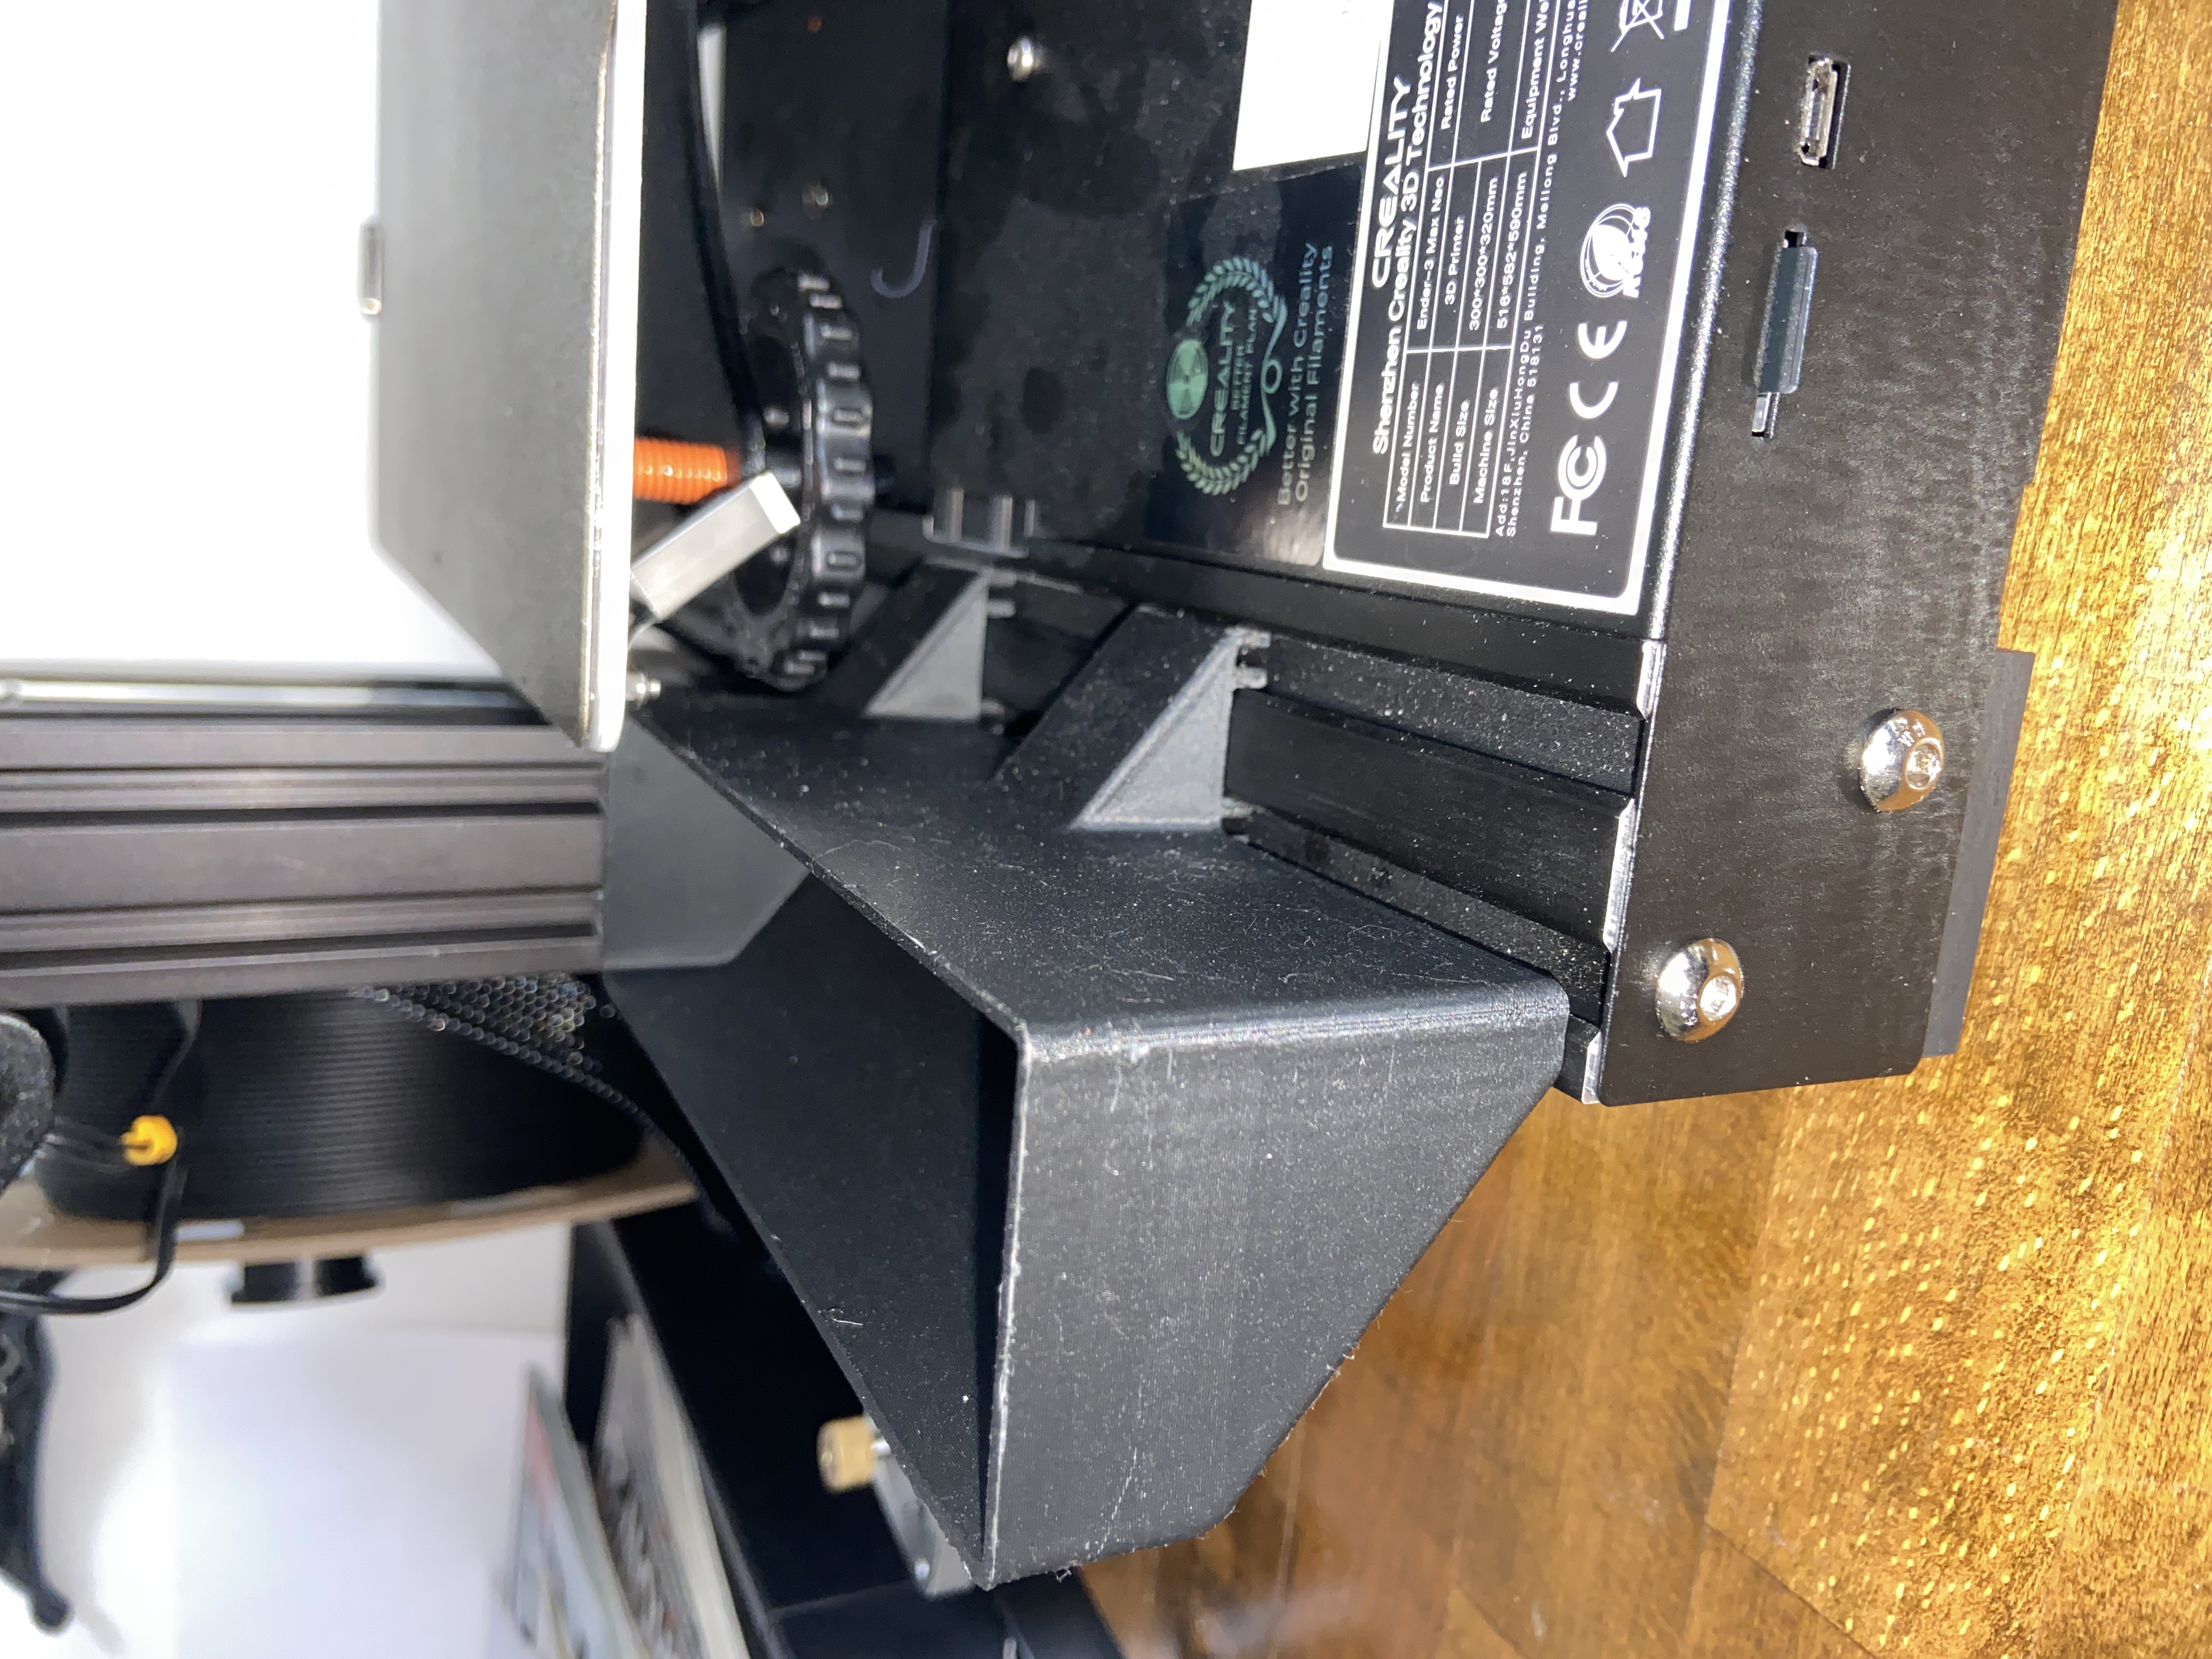 Imprimante 3D Creality Ender-3 V2 Neo, Mise à Niveau de Ender-3 V2 Ave